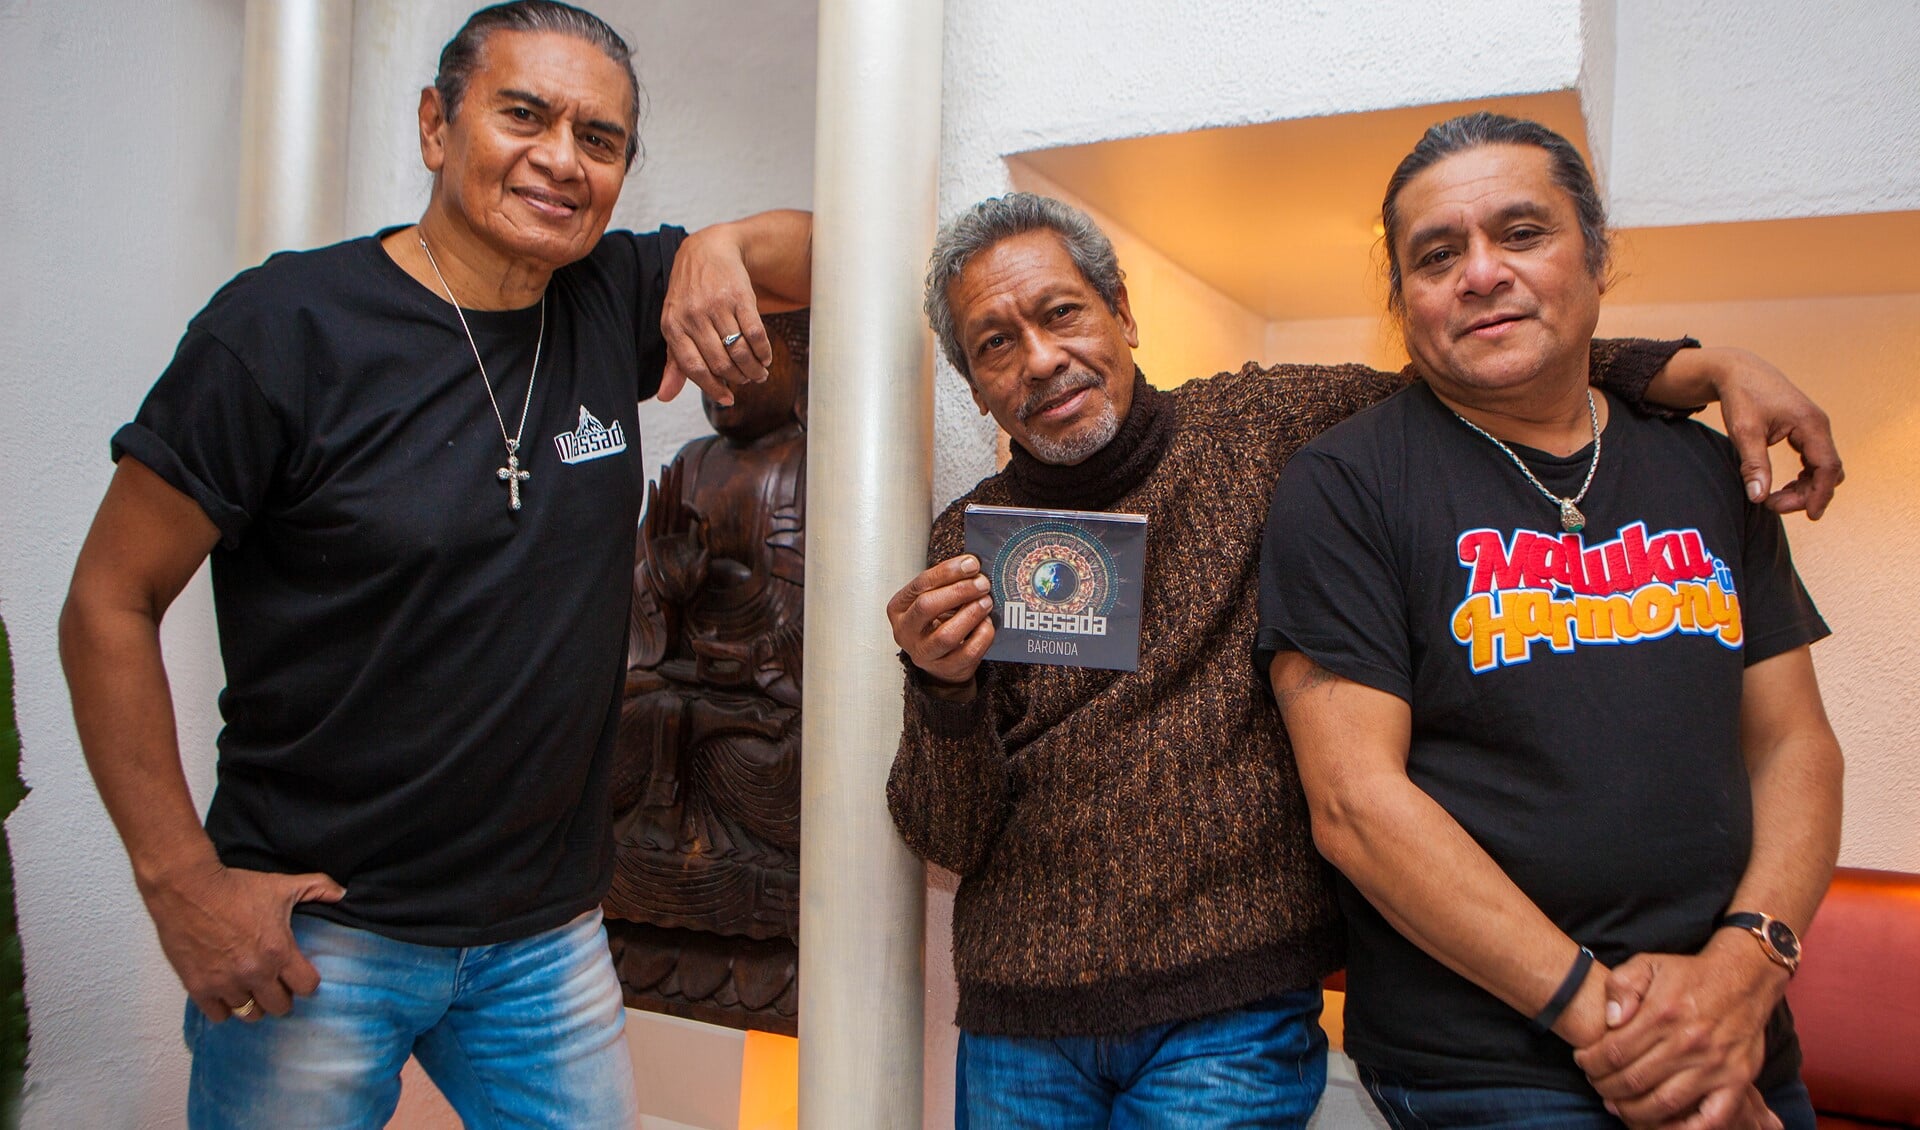 Johnny Manuhutu, Jan Jermais en Jopie Manuhutu, de bandleden uit Huizen van Massada met hun speciale cd 'Baronda' voor hun 40-jarig bestaan.